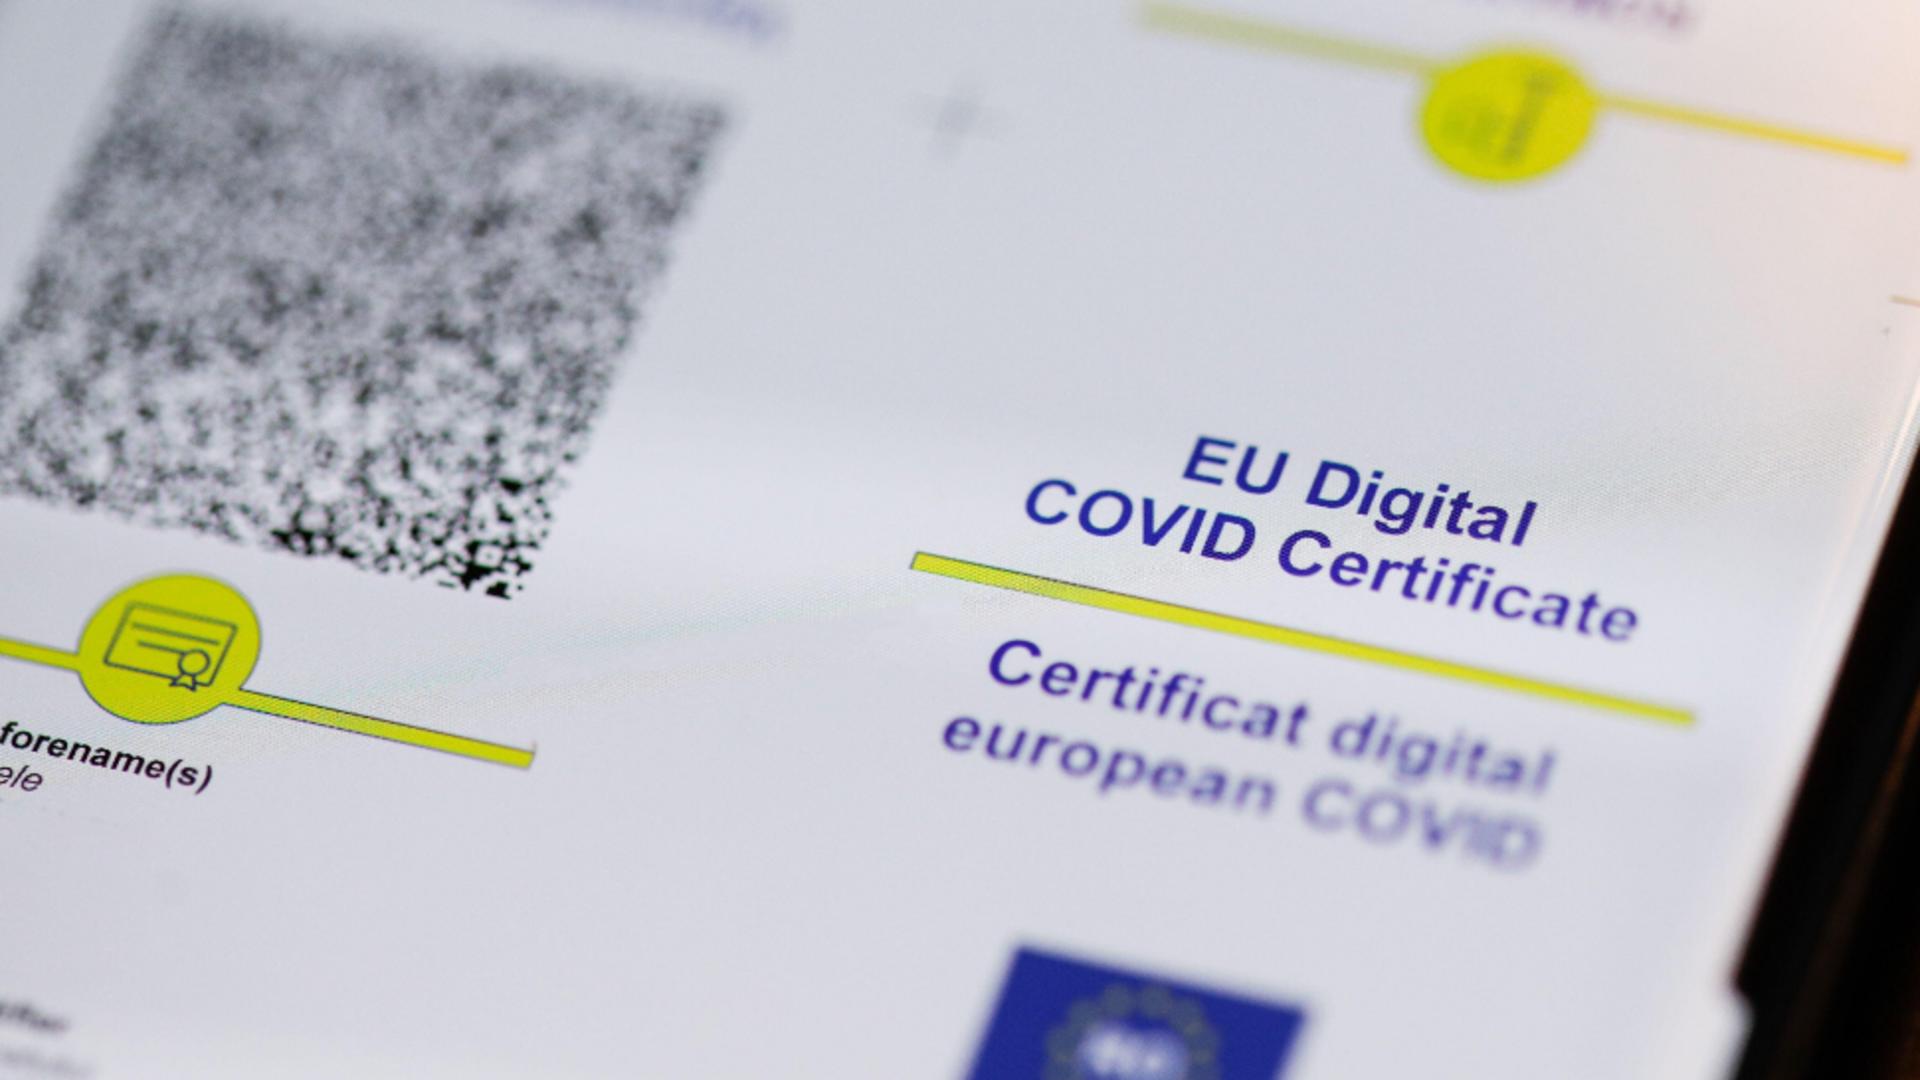 Aproape 600 de milioane de certificate digitale COVID, generate până în prezent / Foto: Profi Media